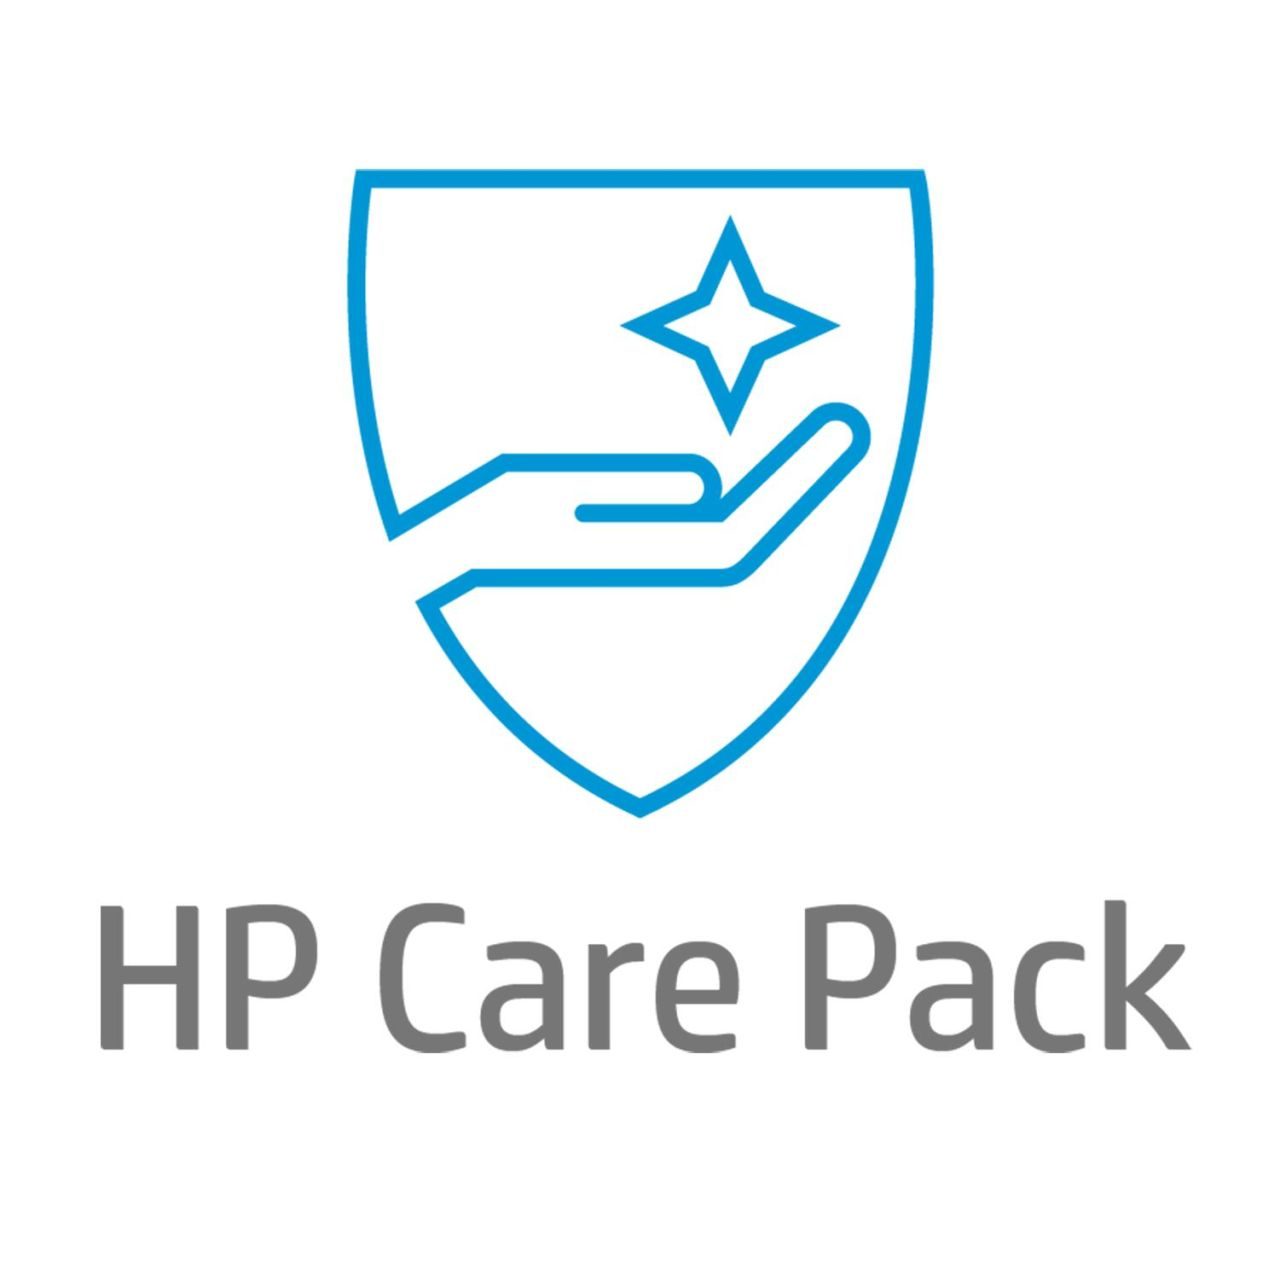 HP Care Pack (U6569PE) 1 Jahr Hardware-Support nach Garantieablauf mit Rückgabeservice zur Reparatur für Thin Clients